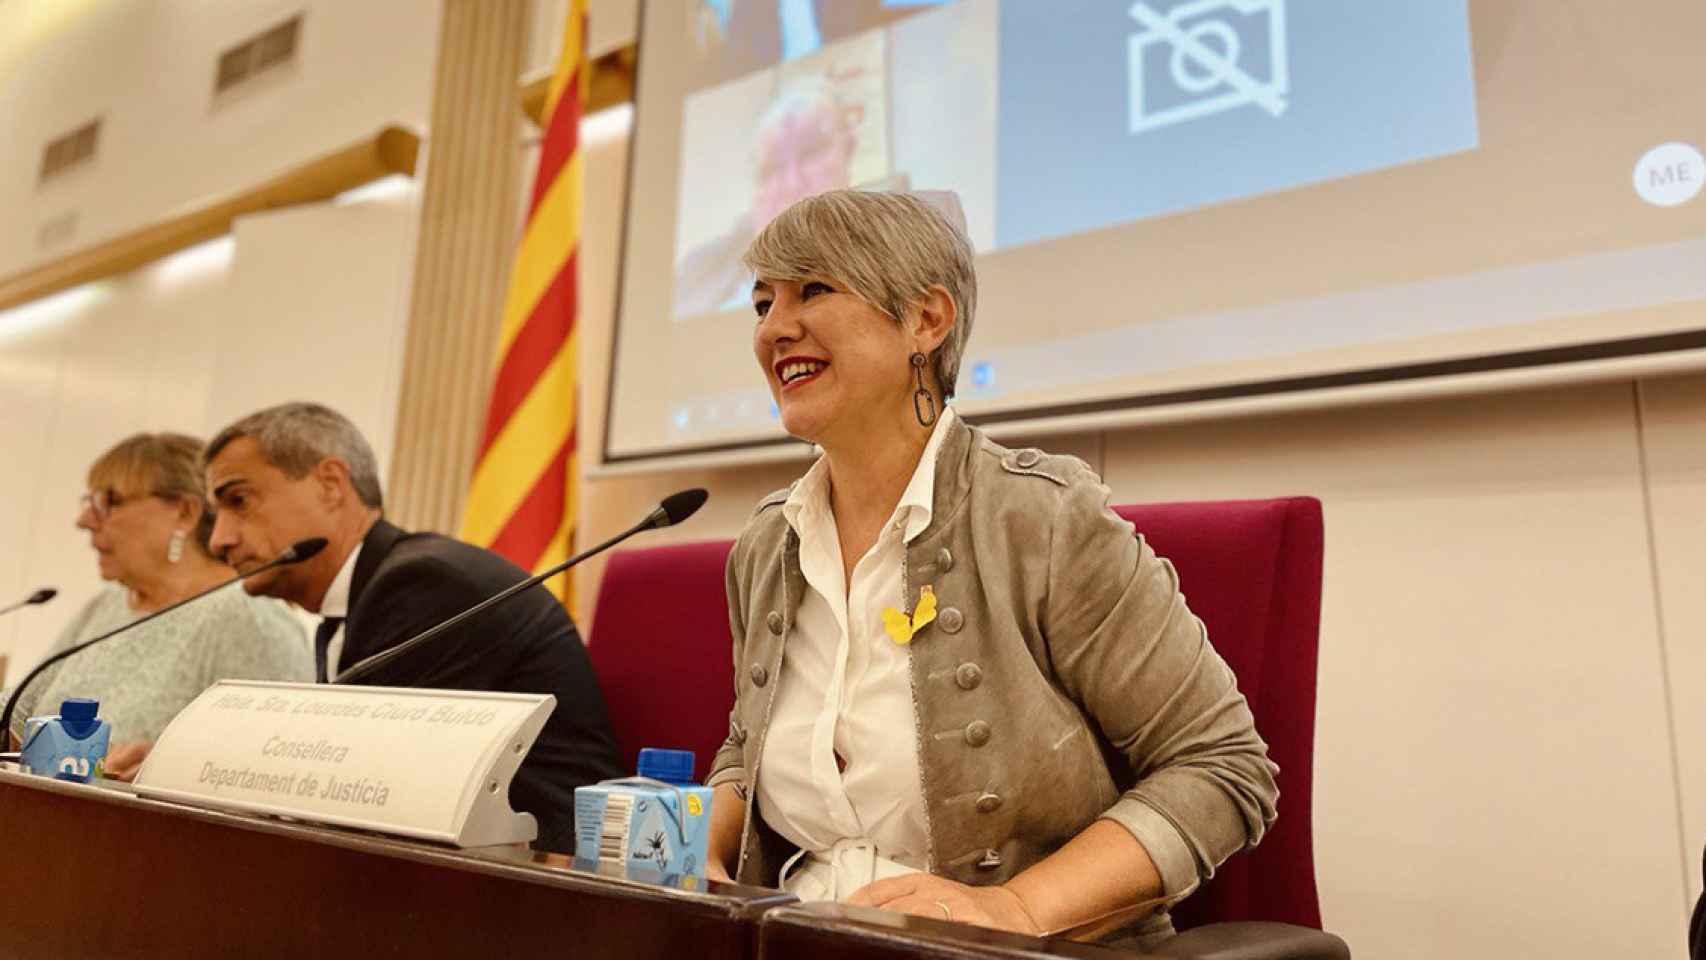 Lourdes Ciuró, consejera de Justicia, quiere exigir el nivel C1 de catalán a los profesionales de la justicia